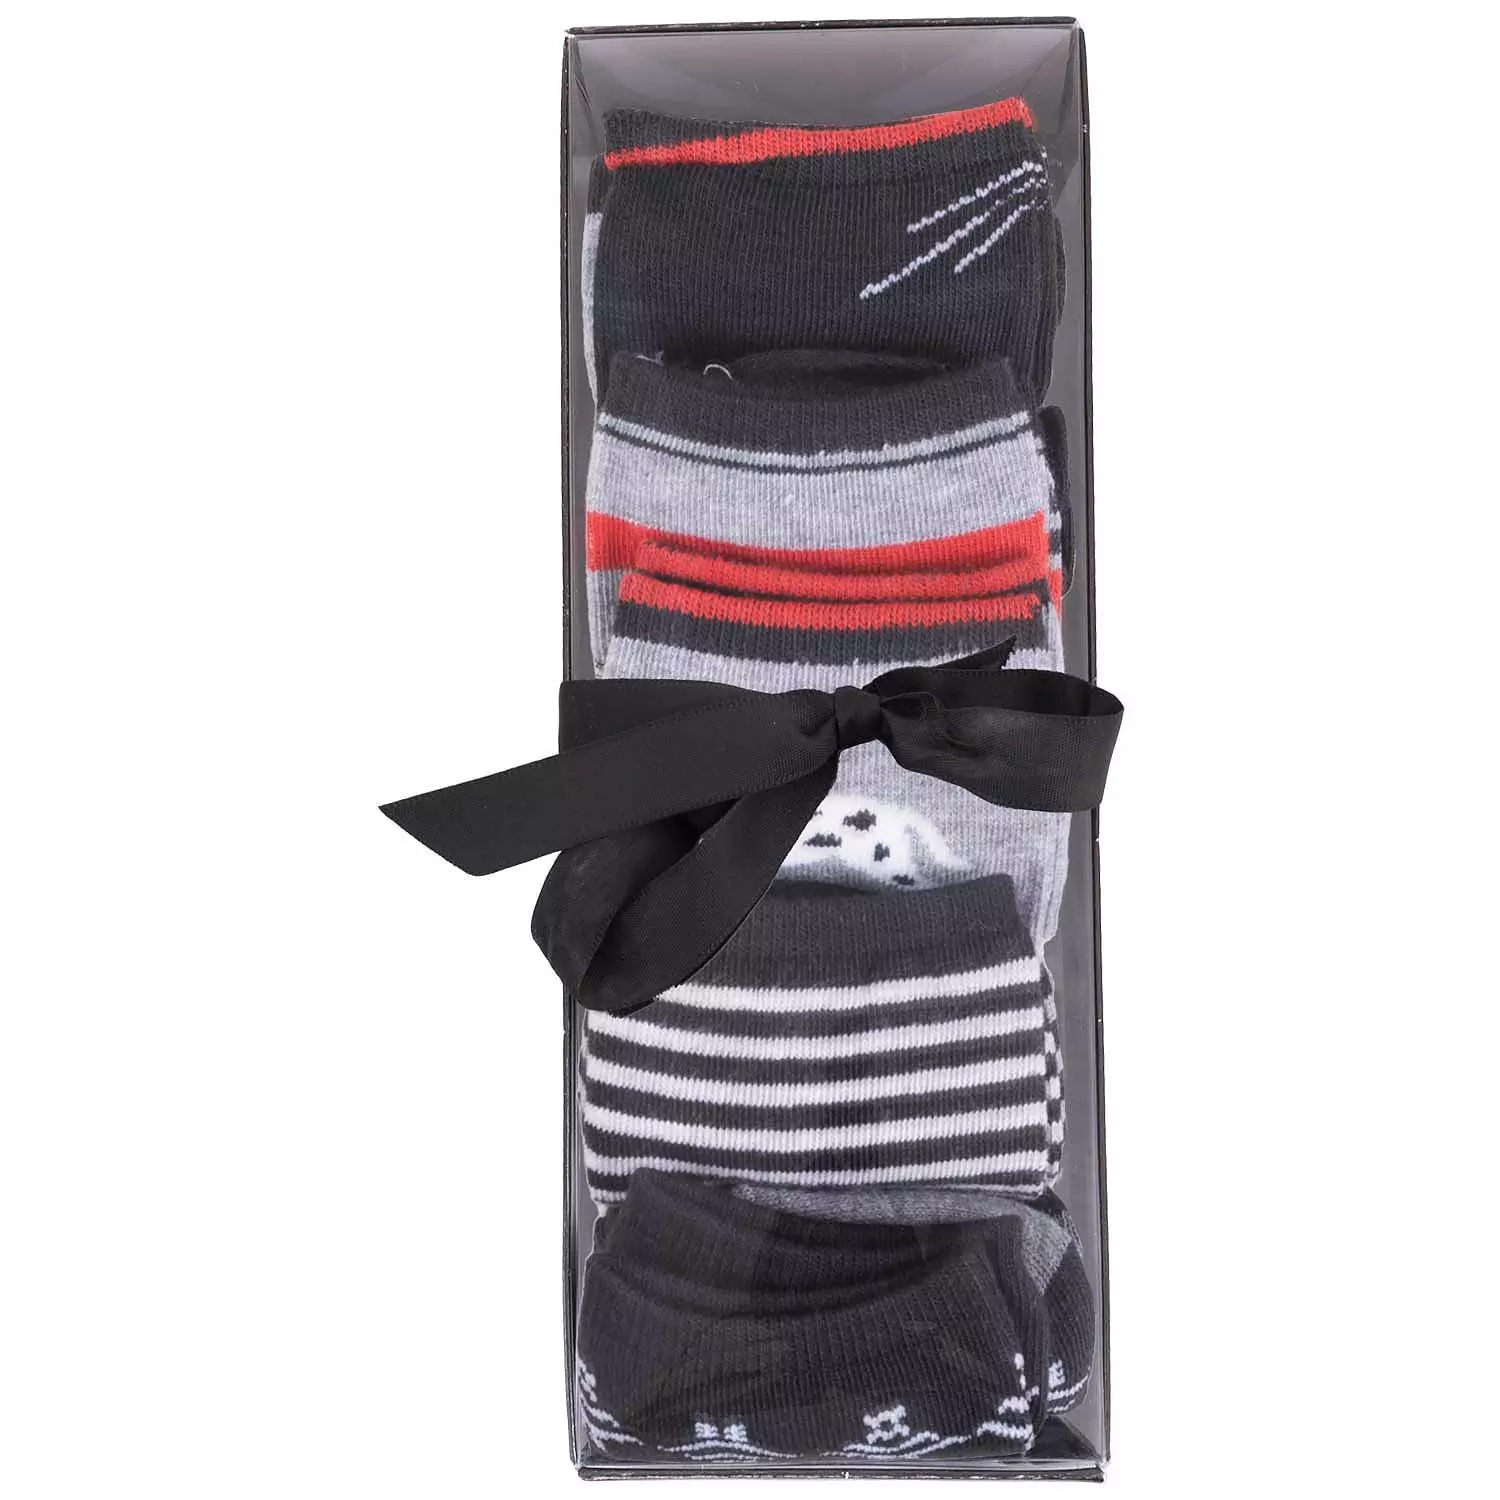 Gift box of 5 patterned dress socks